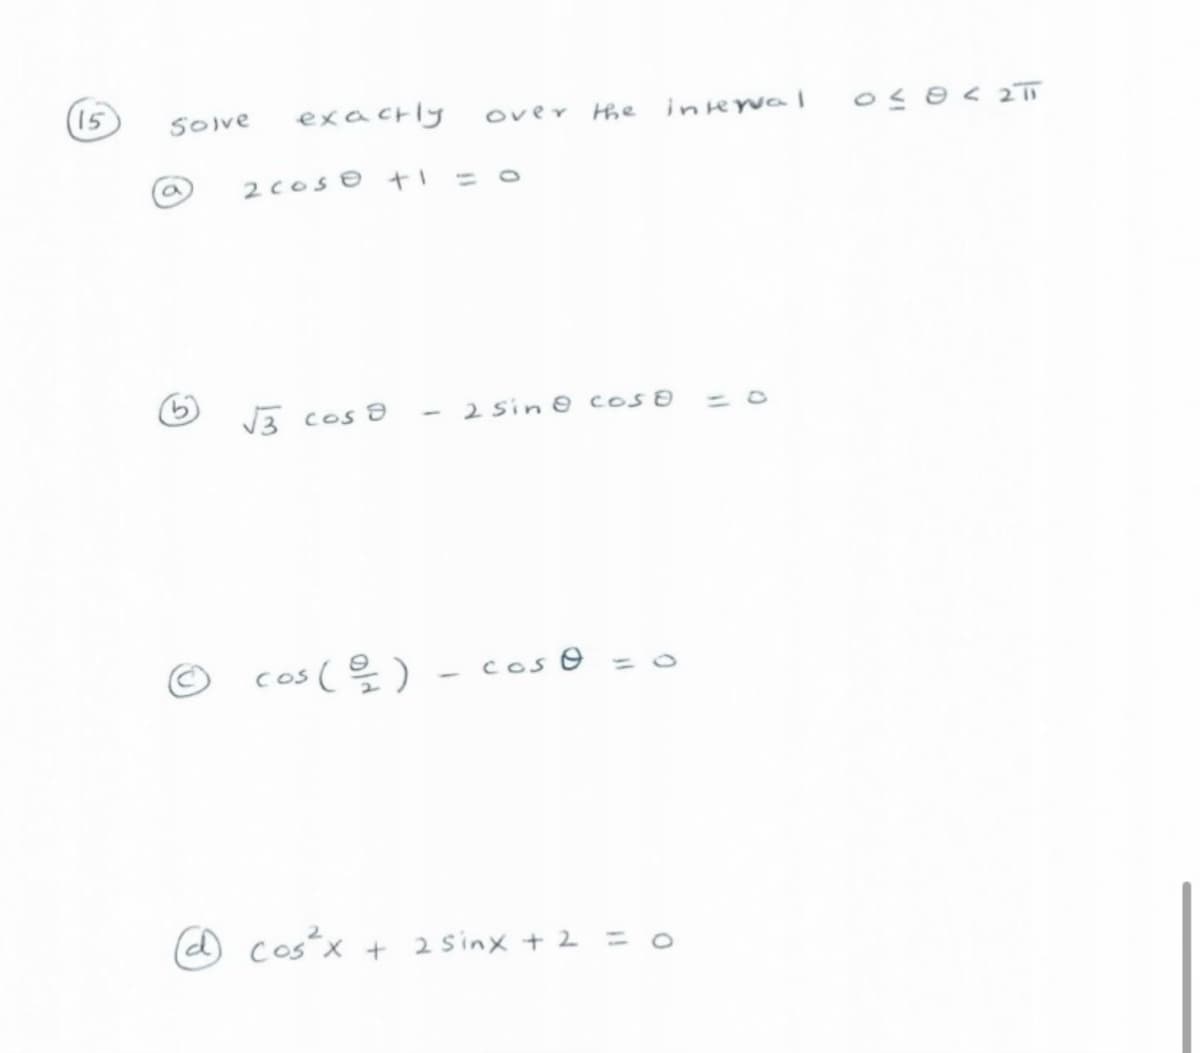 15
SOIve
exacrly
over
the
interval
2cose ti
V3 cos 8
- 2 sin 8 cos
cos ( 을).
Cos O =
costx
+ 2 sinx + 2 = 0
